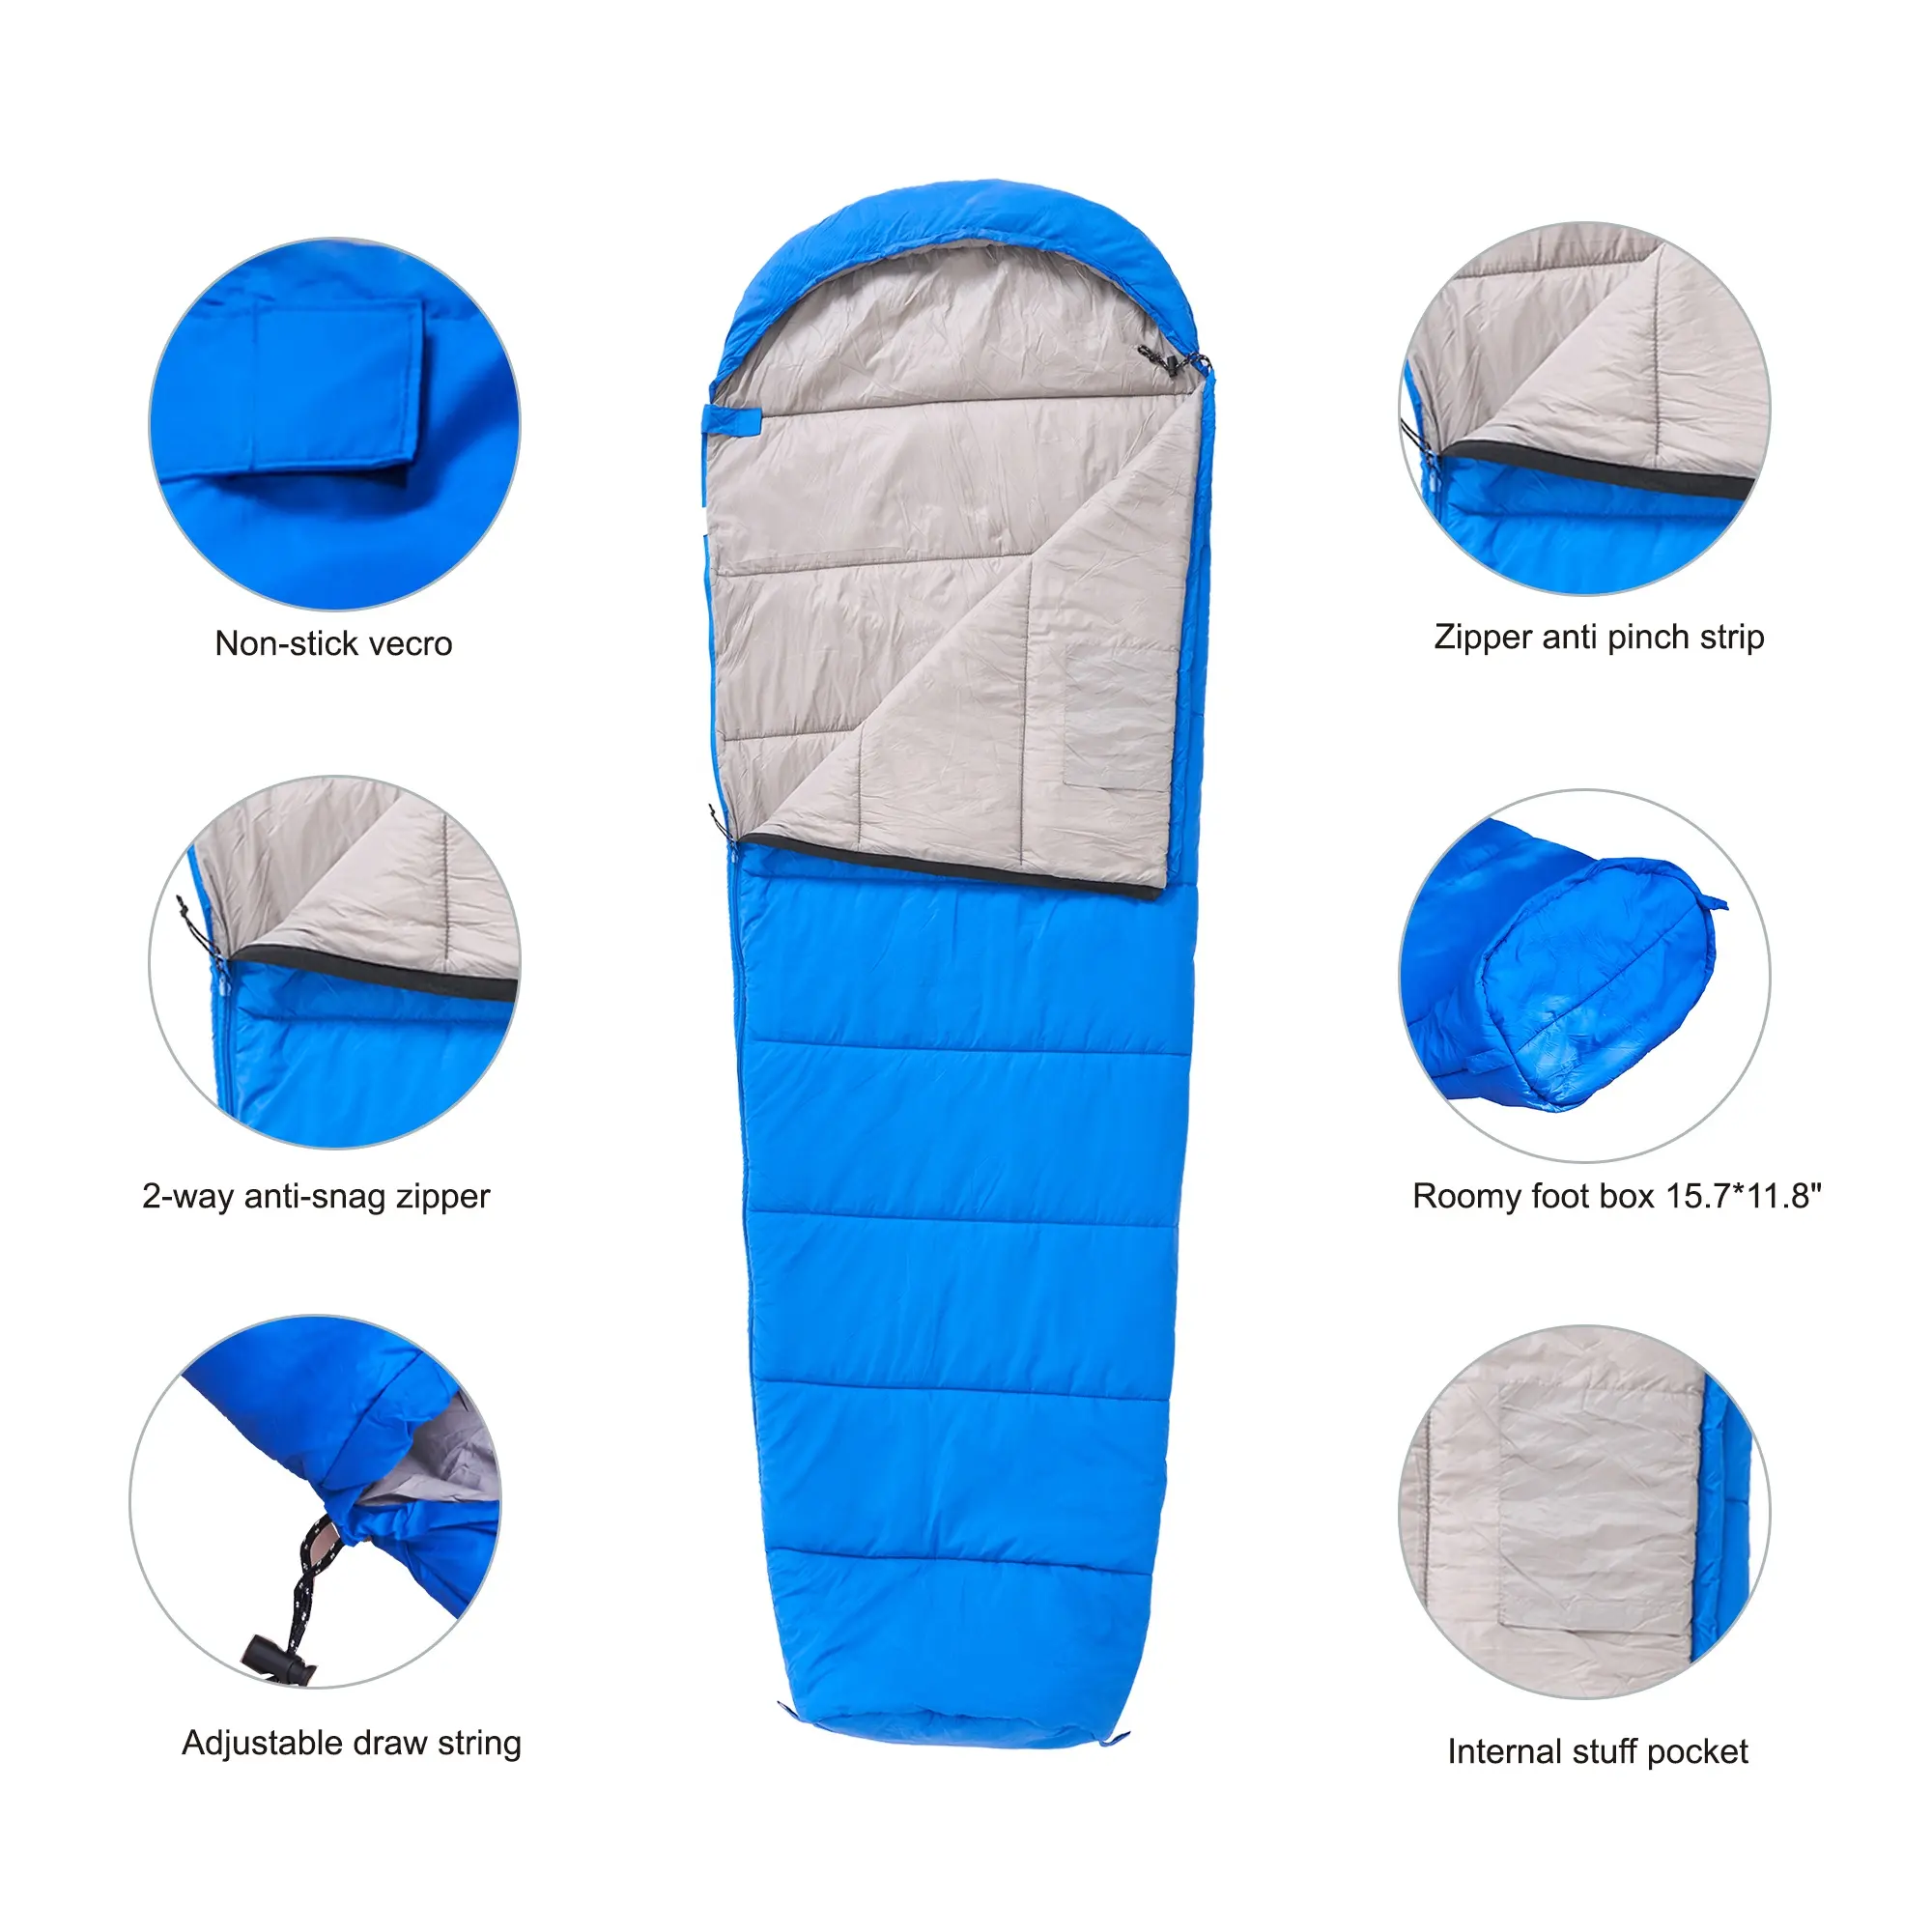 ODM momie sac de couchage pour adulte hiver chaud sac de couchage compressible survie sac de couchage